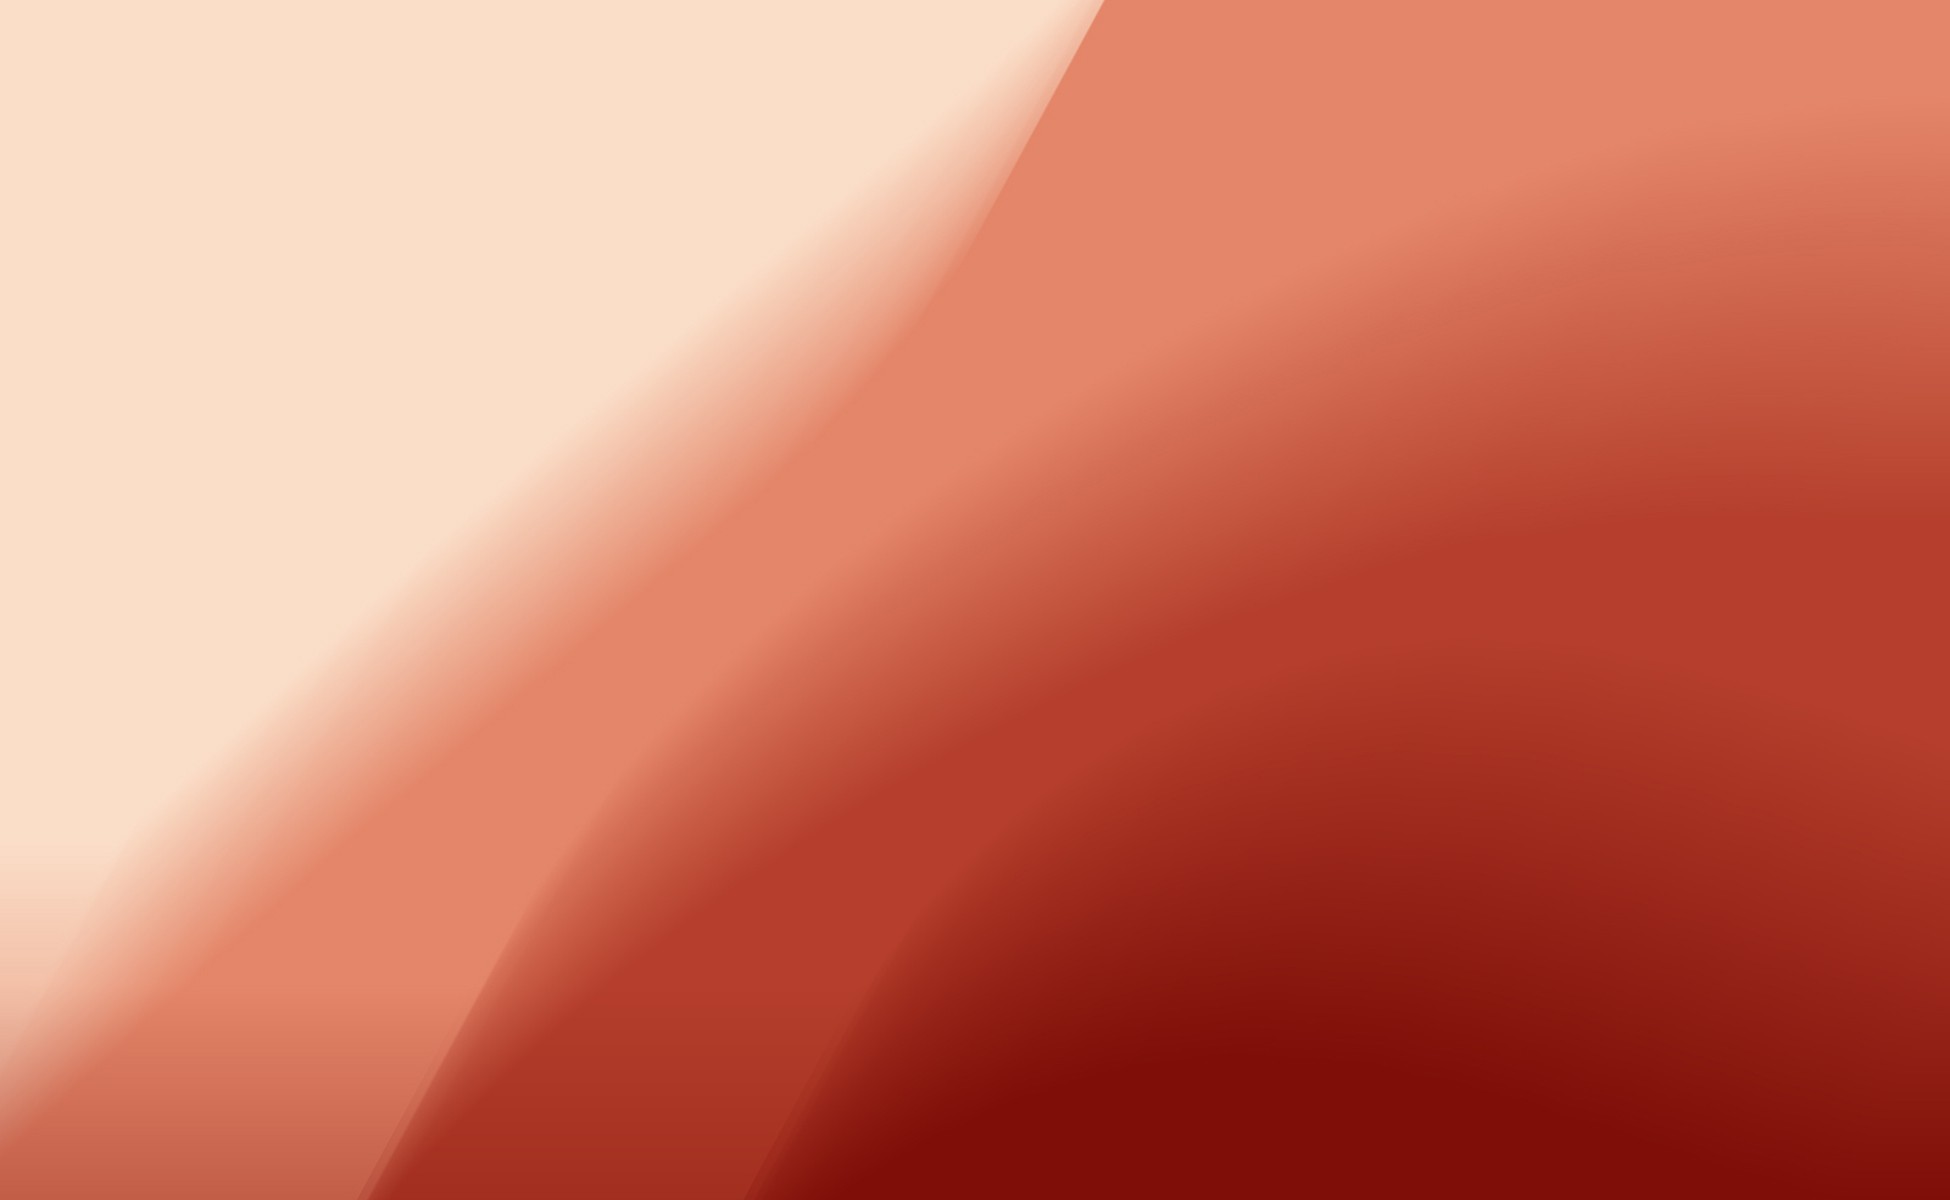 General 1950x1200 minimalism gradient digital art texture red